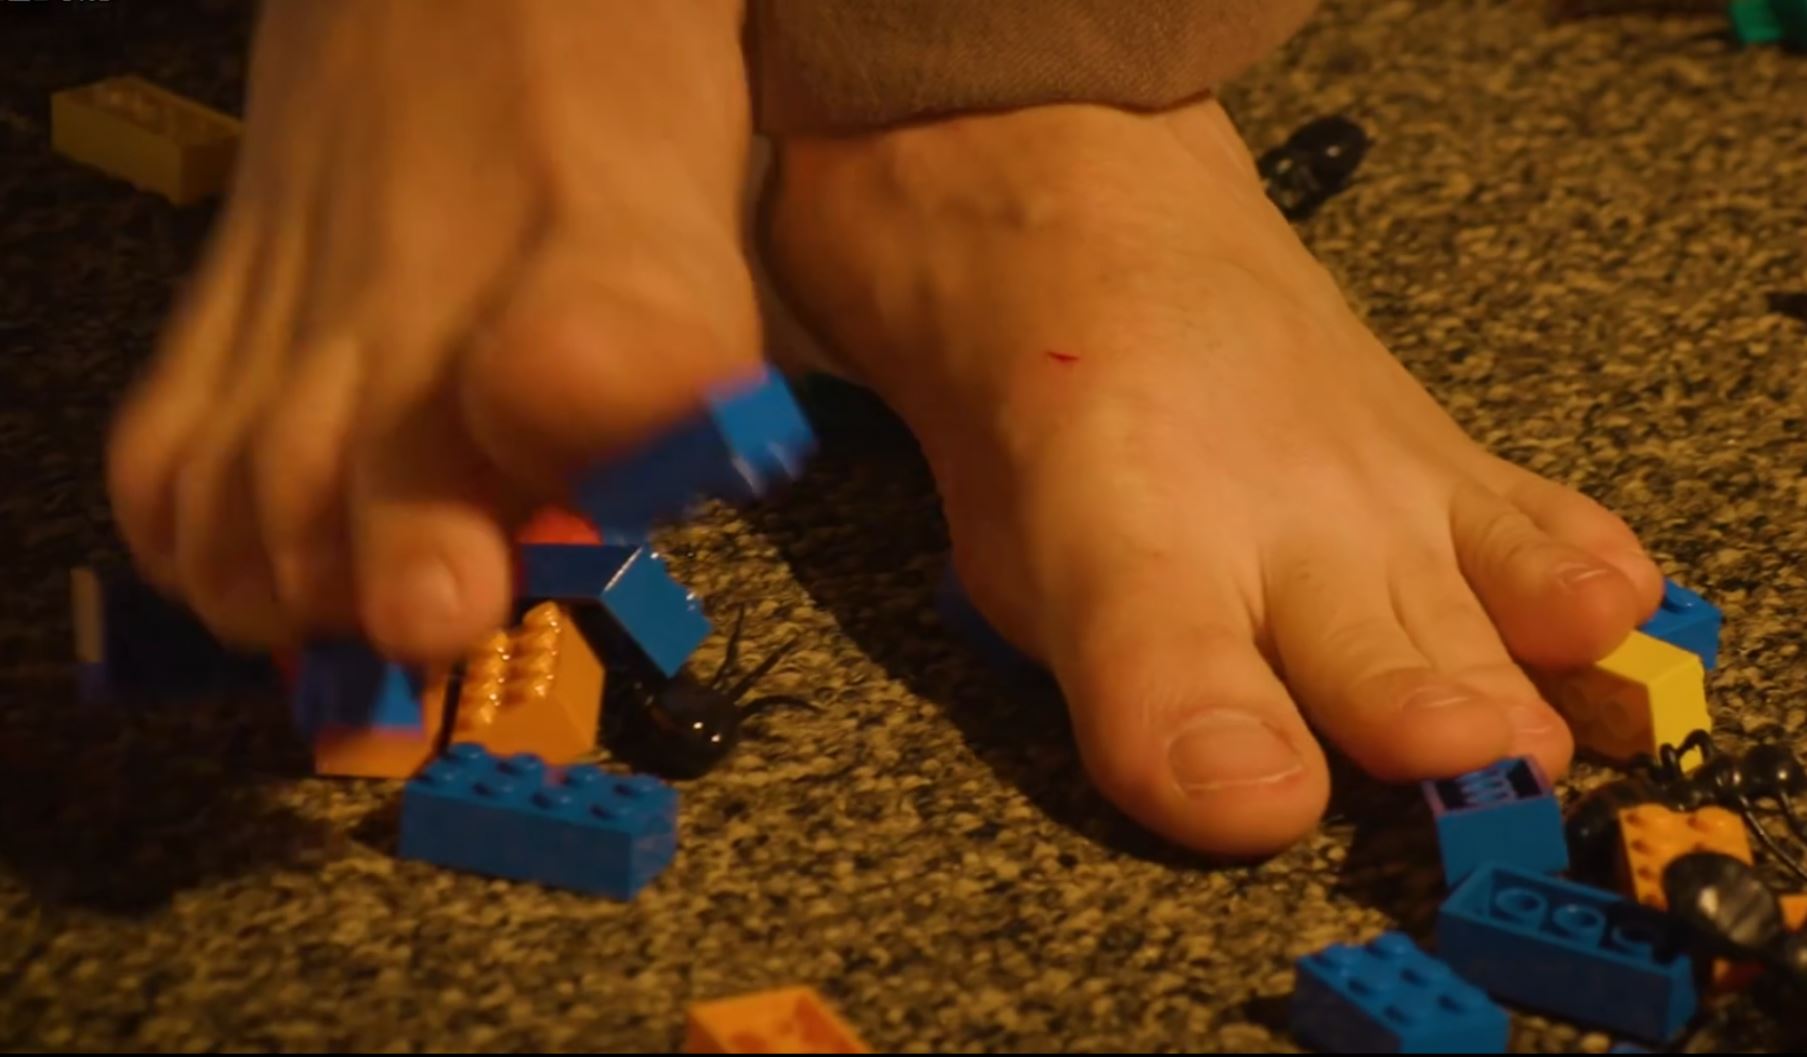 Barefoot on the floor full of lego